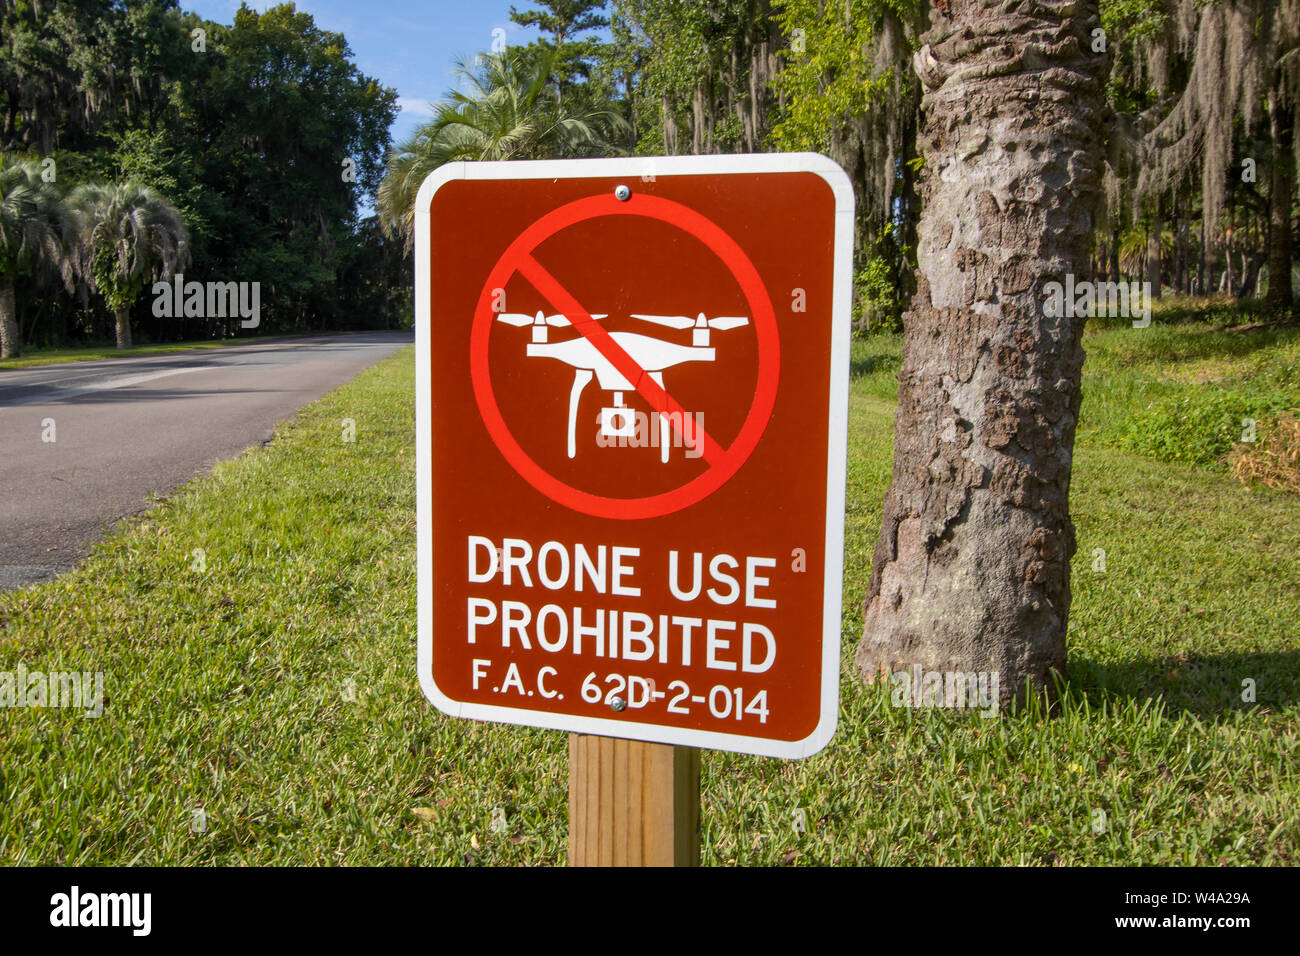 Un panneau d'avertissement dans un parc d'État de Floride interdisant l'exploitation des aéronefs de drones Banque D'Images